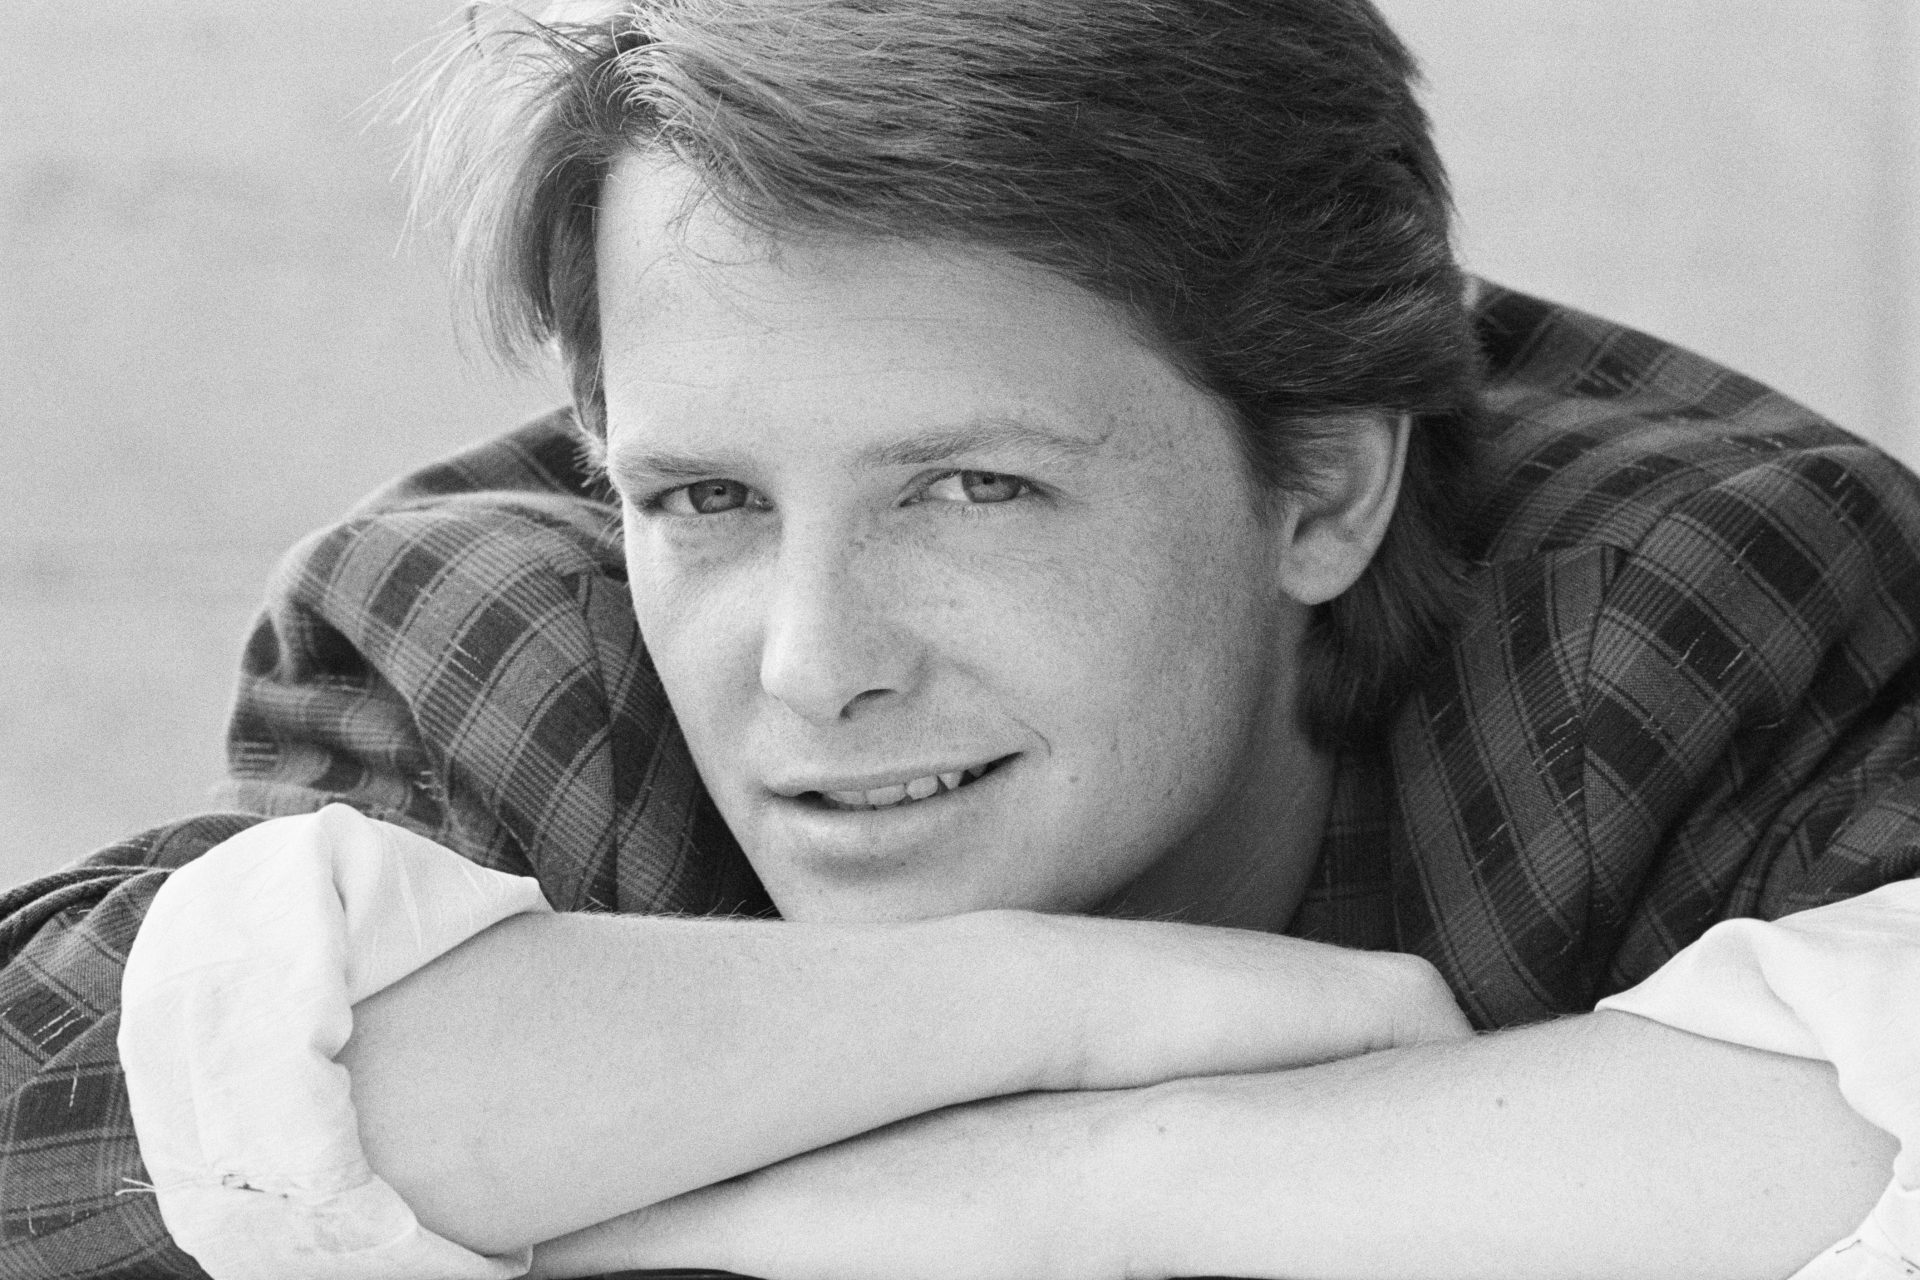 La batalla de salud de Michael J. Fox: un vistazo a su lucha personal